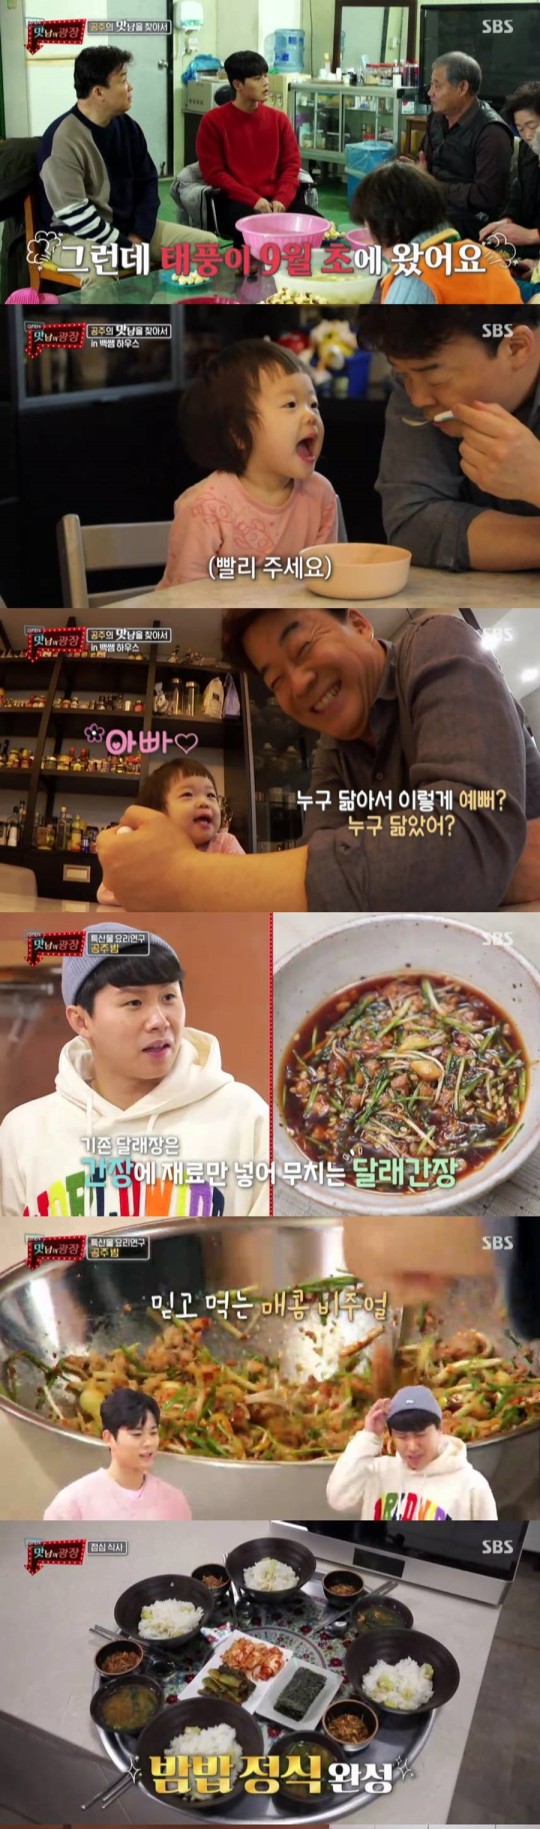 SBS ‘맛남의 광장' 방송 화면.